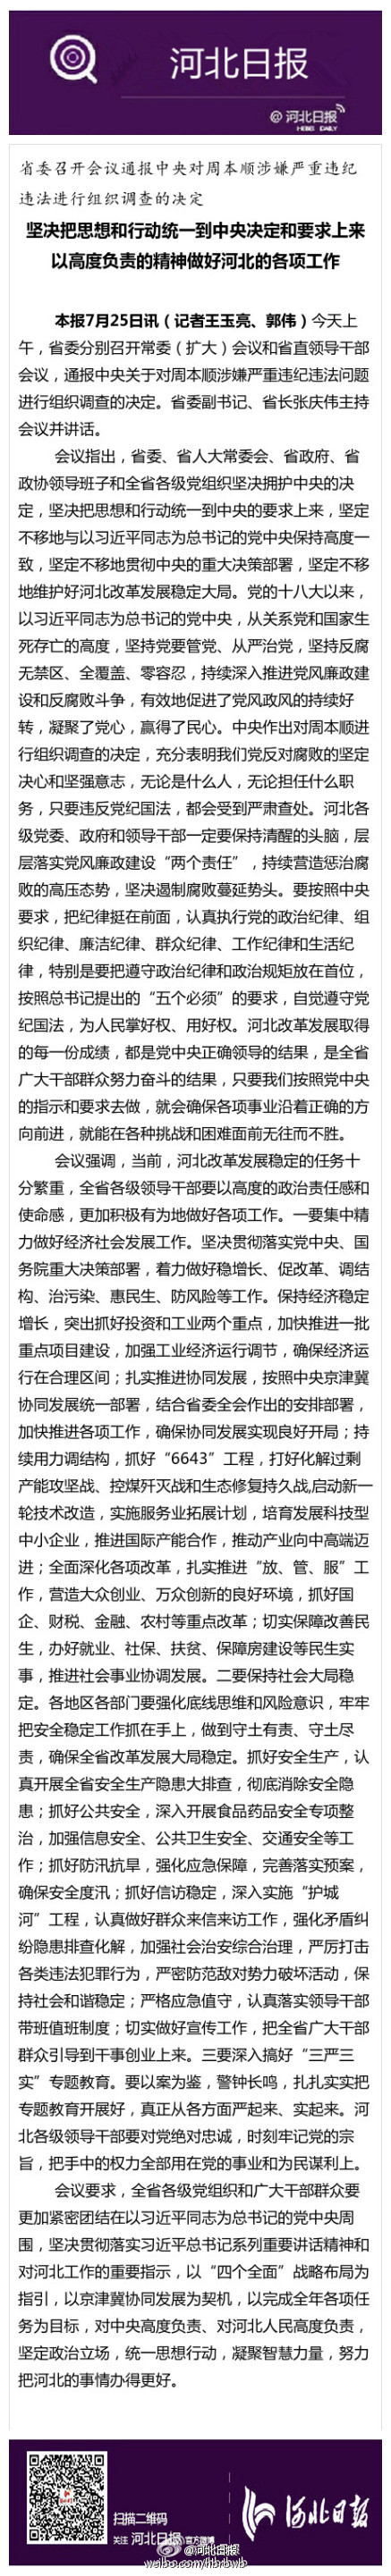 河北省委通报中央对周本顺调查决定